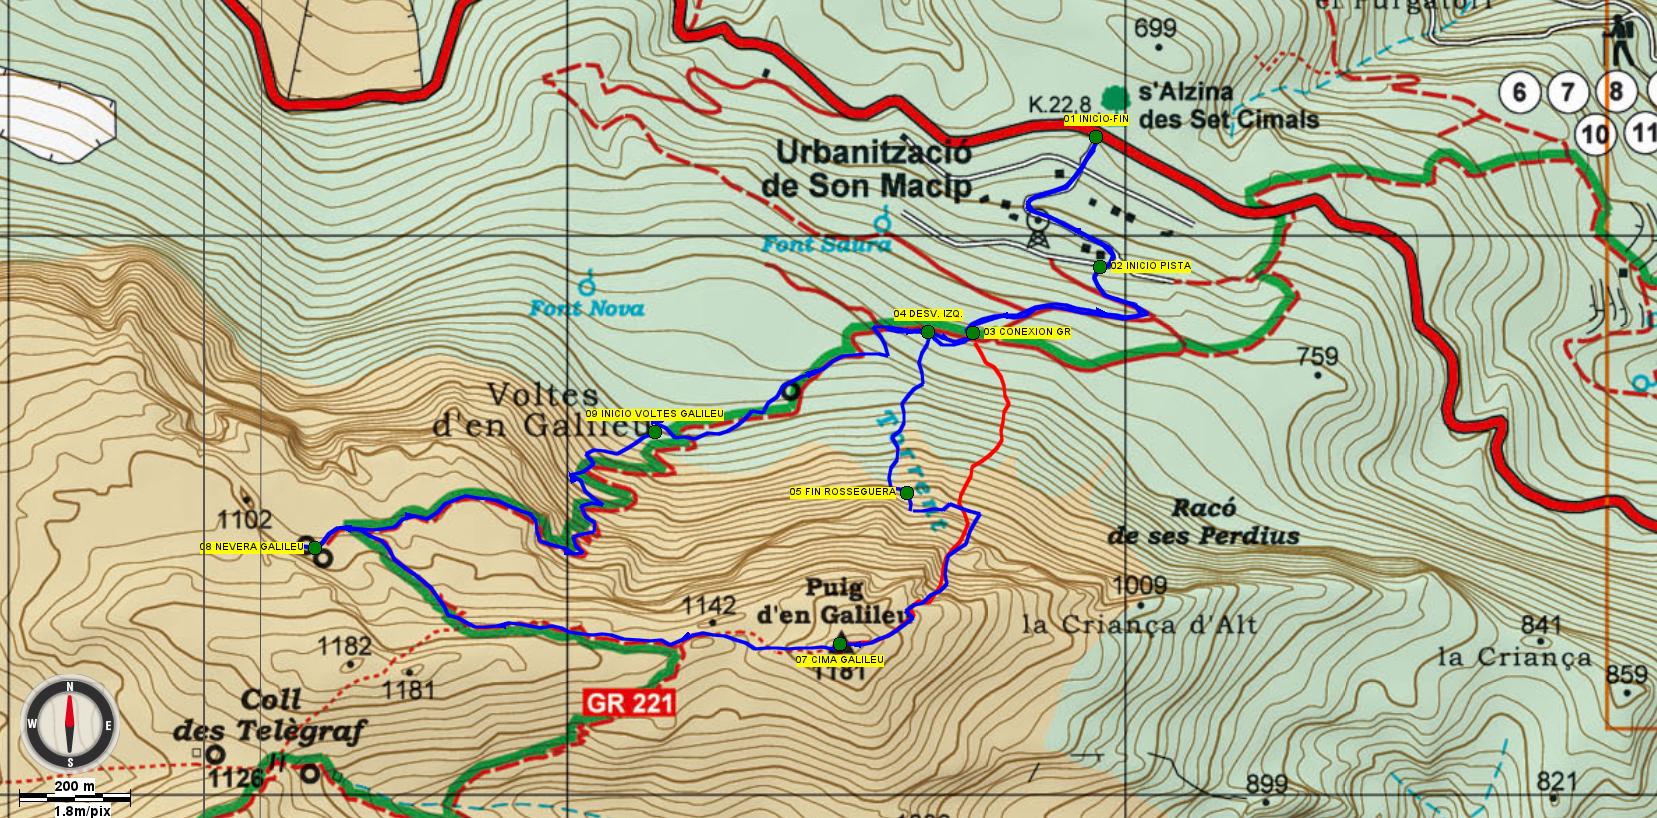 En azul el track completo realizado el sábado y en rojo la ruta directa a la canal realizada por Jaume el jueves siguiente